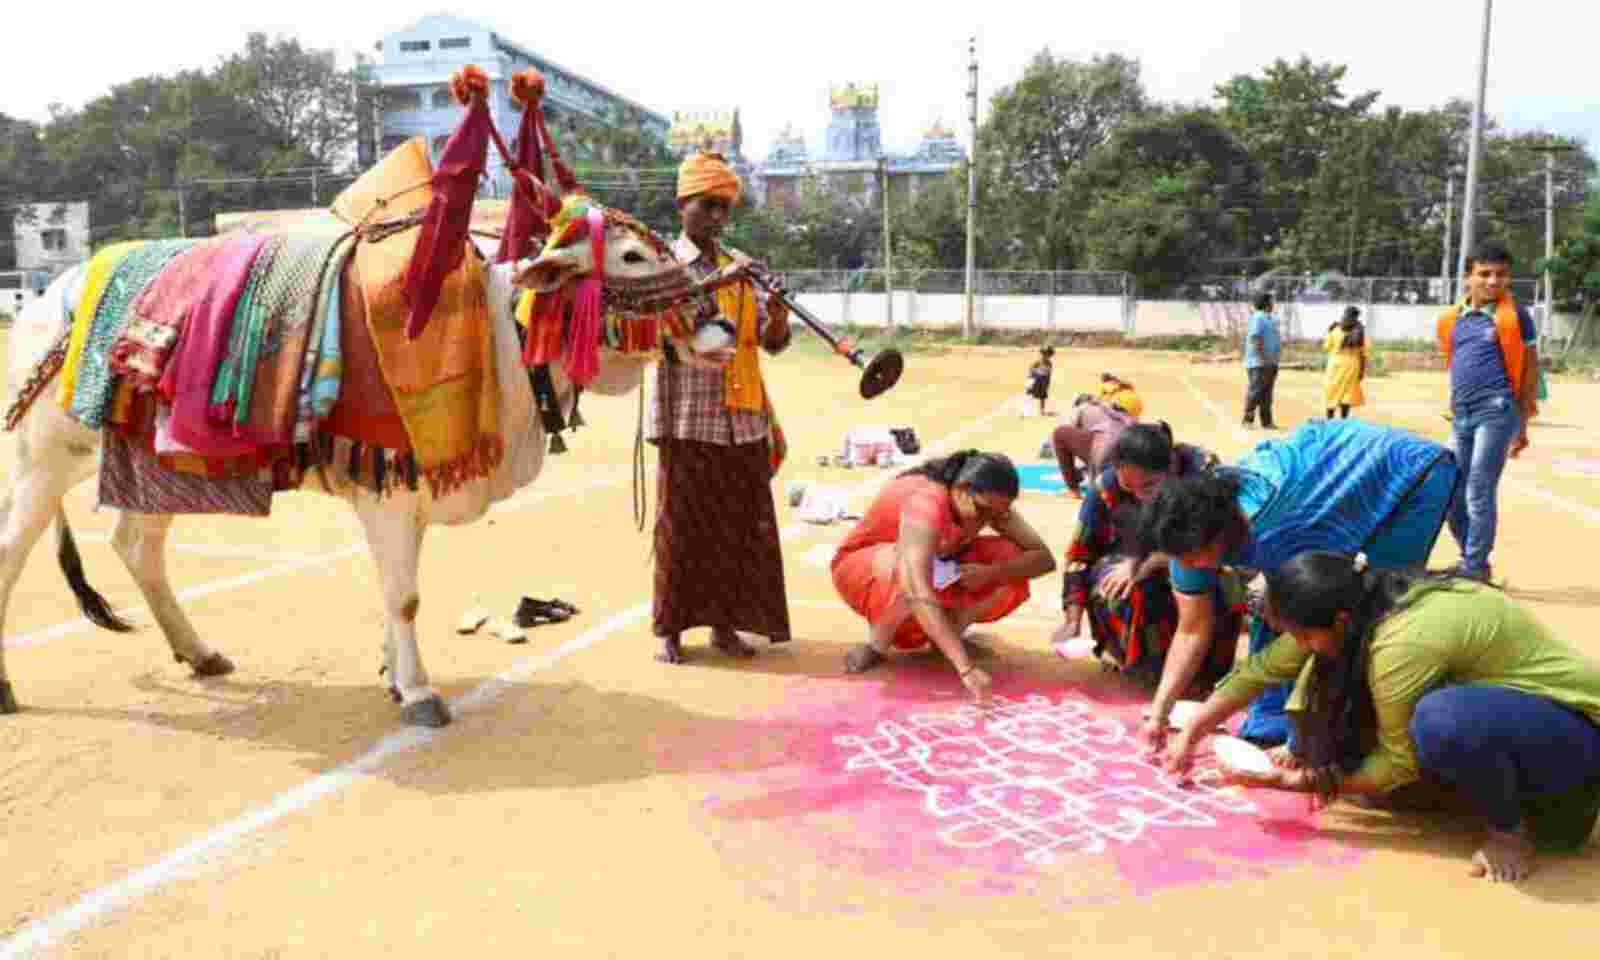 Video in Hindu Festivals